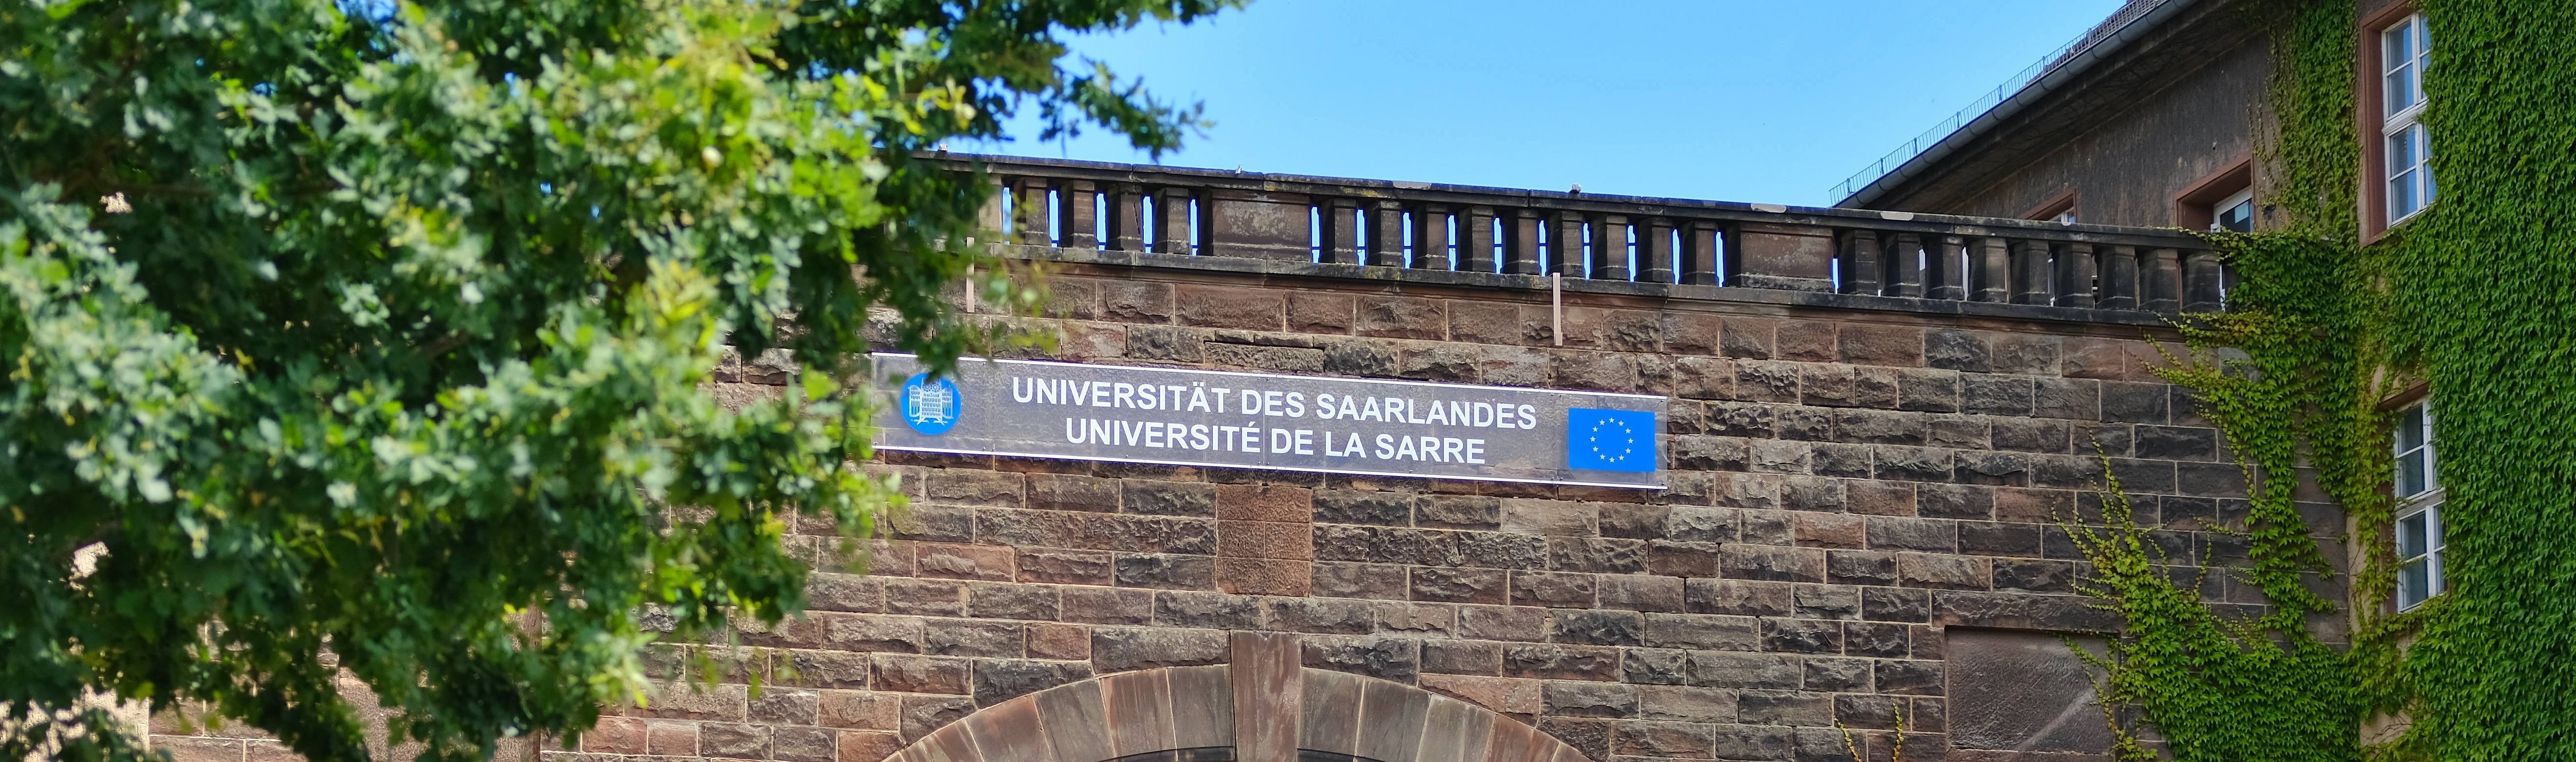 Eingangsportal der Universität des Saarlandes mit der deutsch-französischen Benennung Universität des Saarlandes, Université de la Sarre